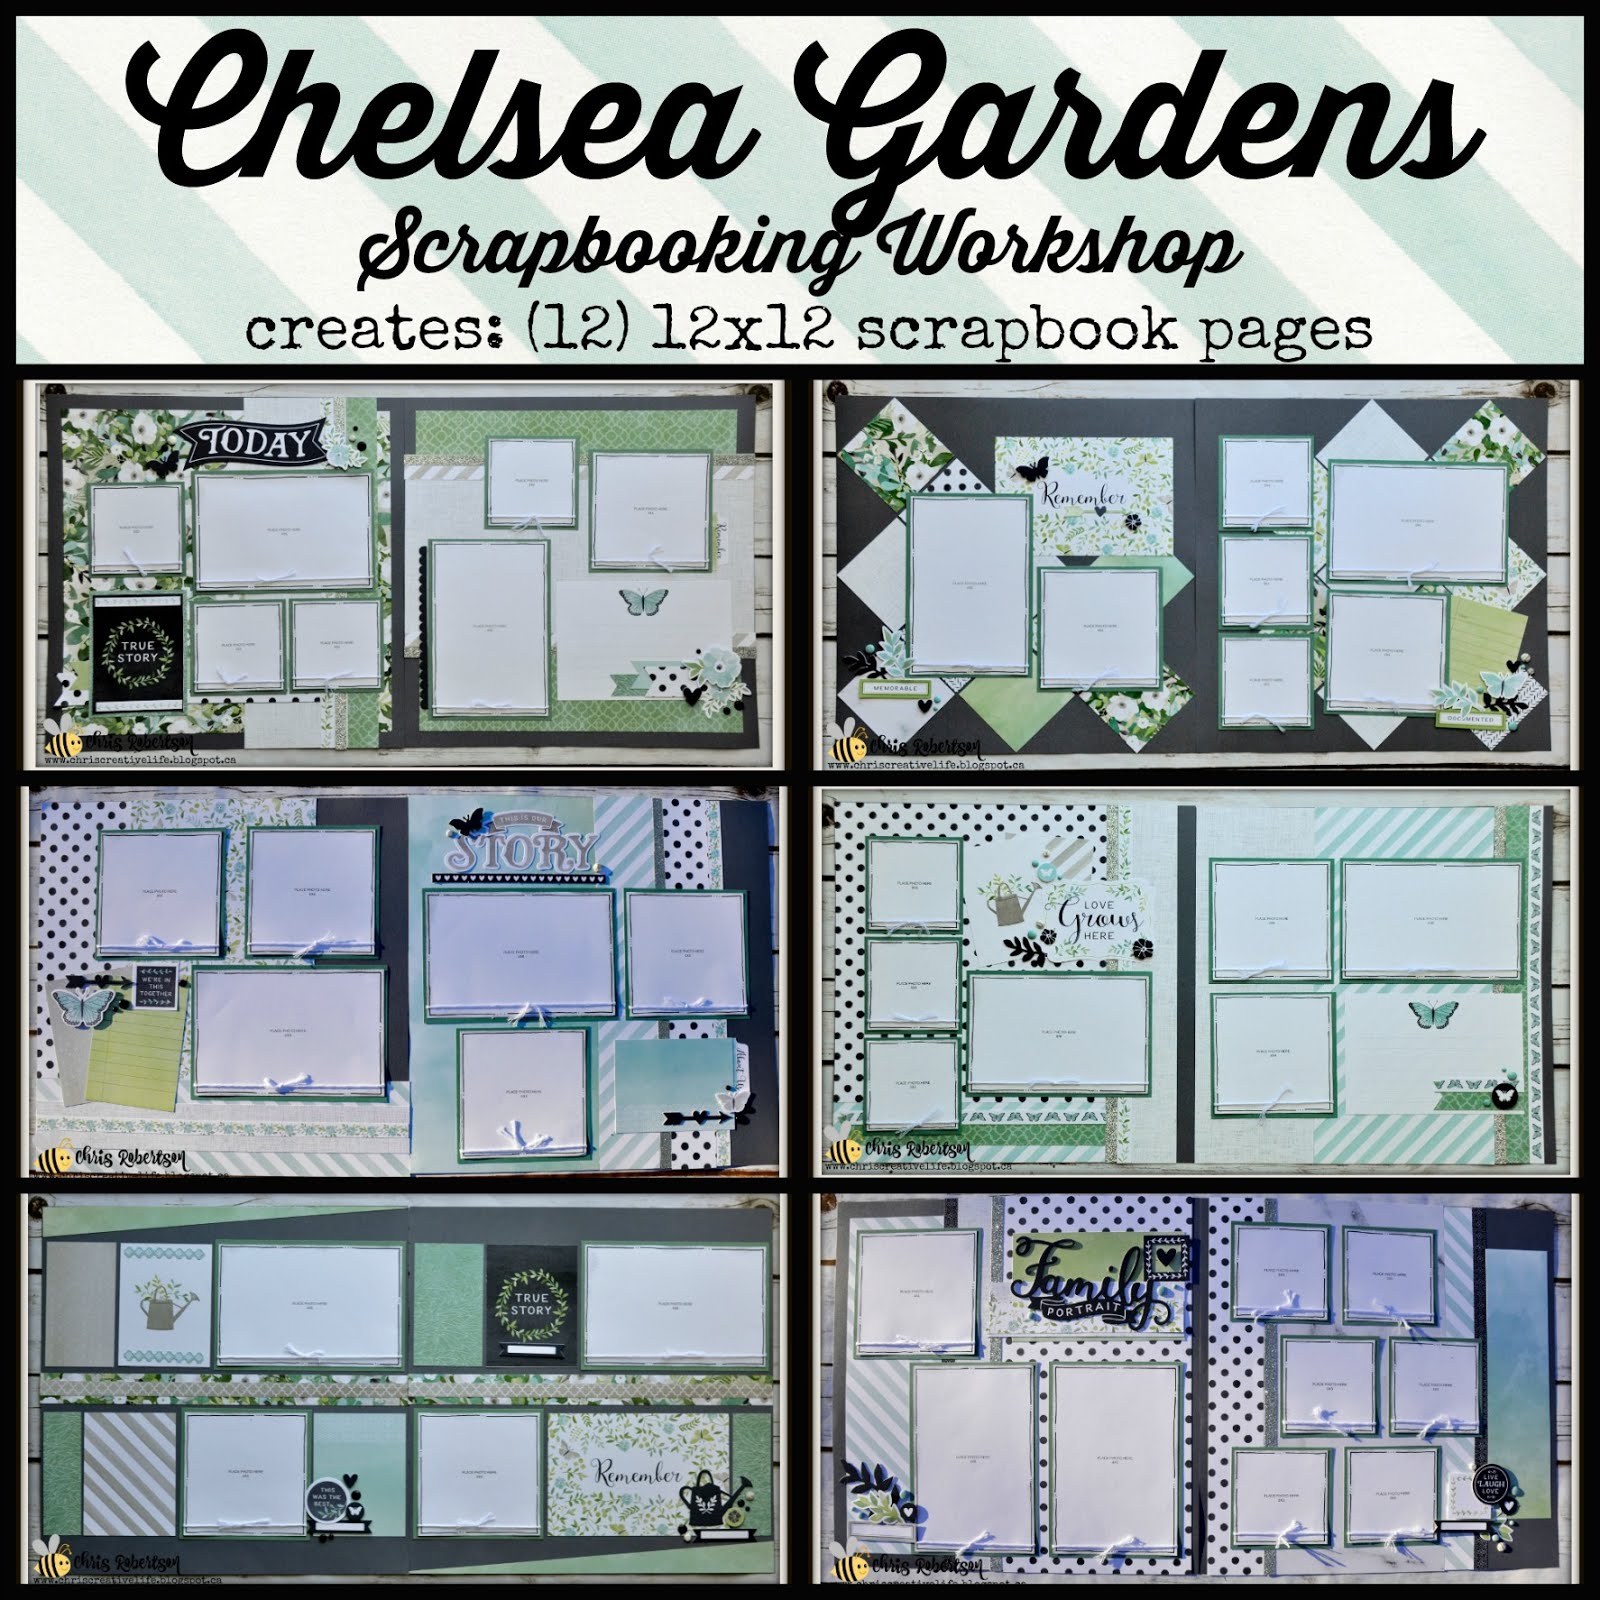 Chelsea Gardens Scrapbooking Workshop